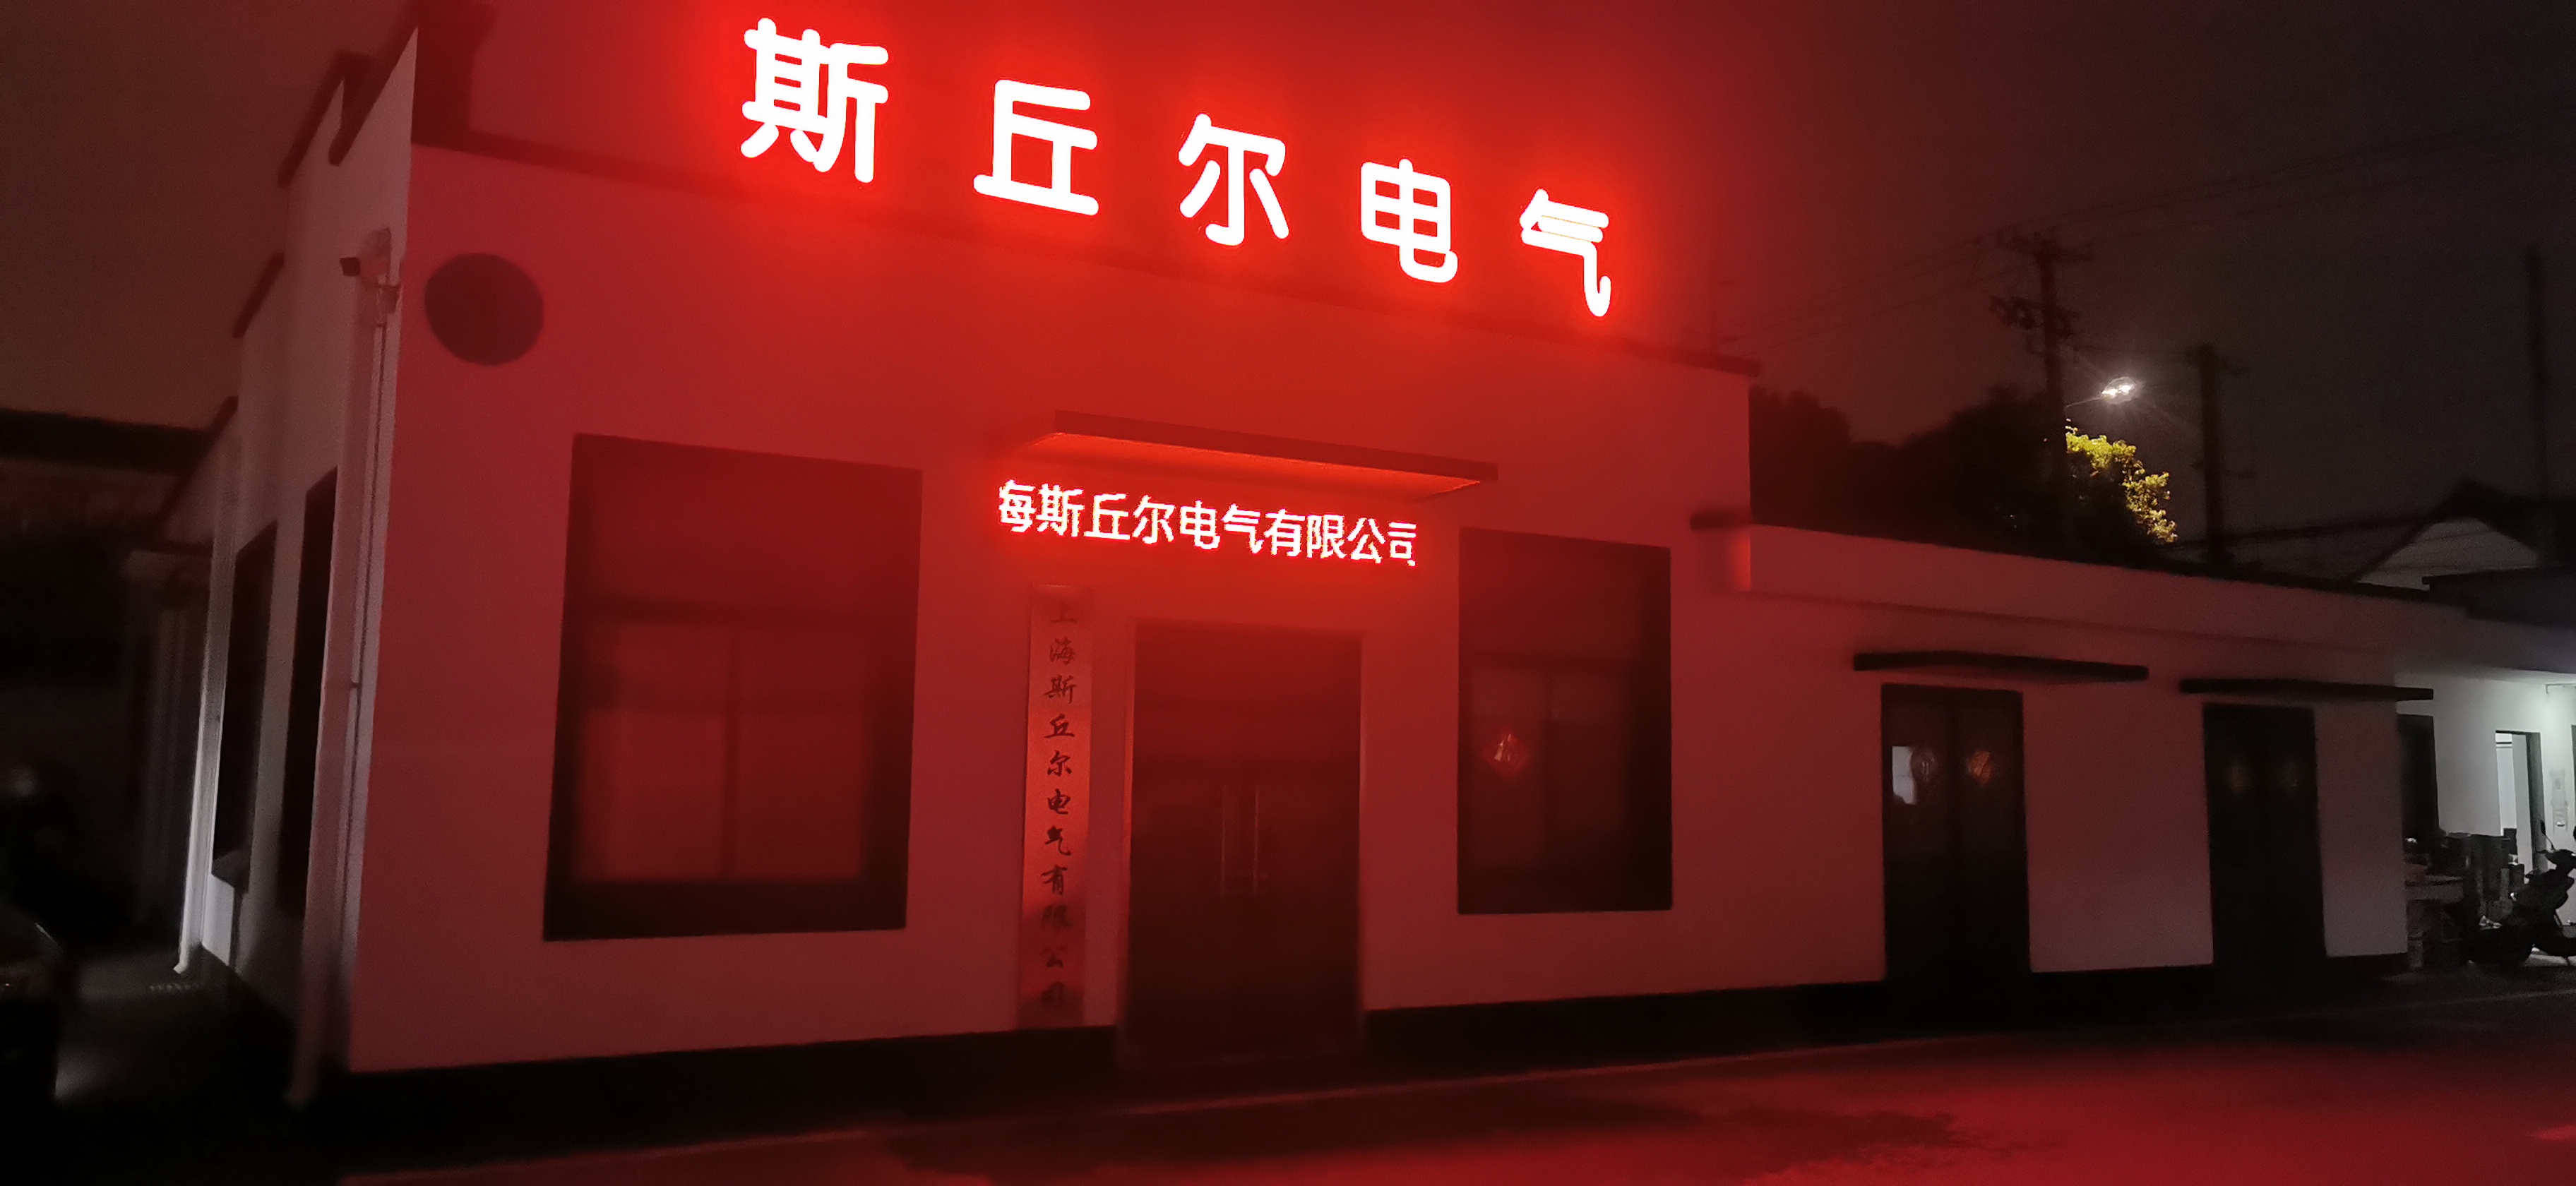 上海斯丘尔电气有限公司